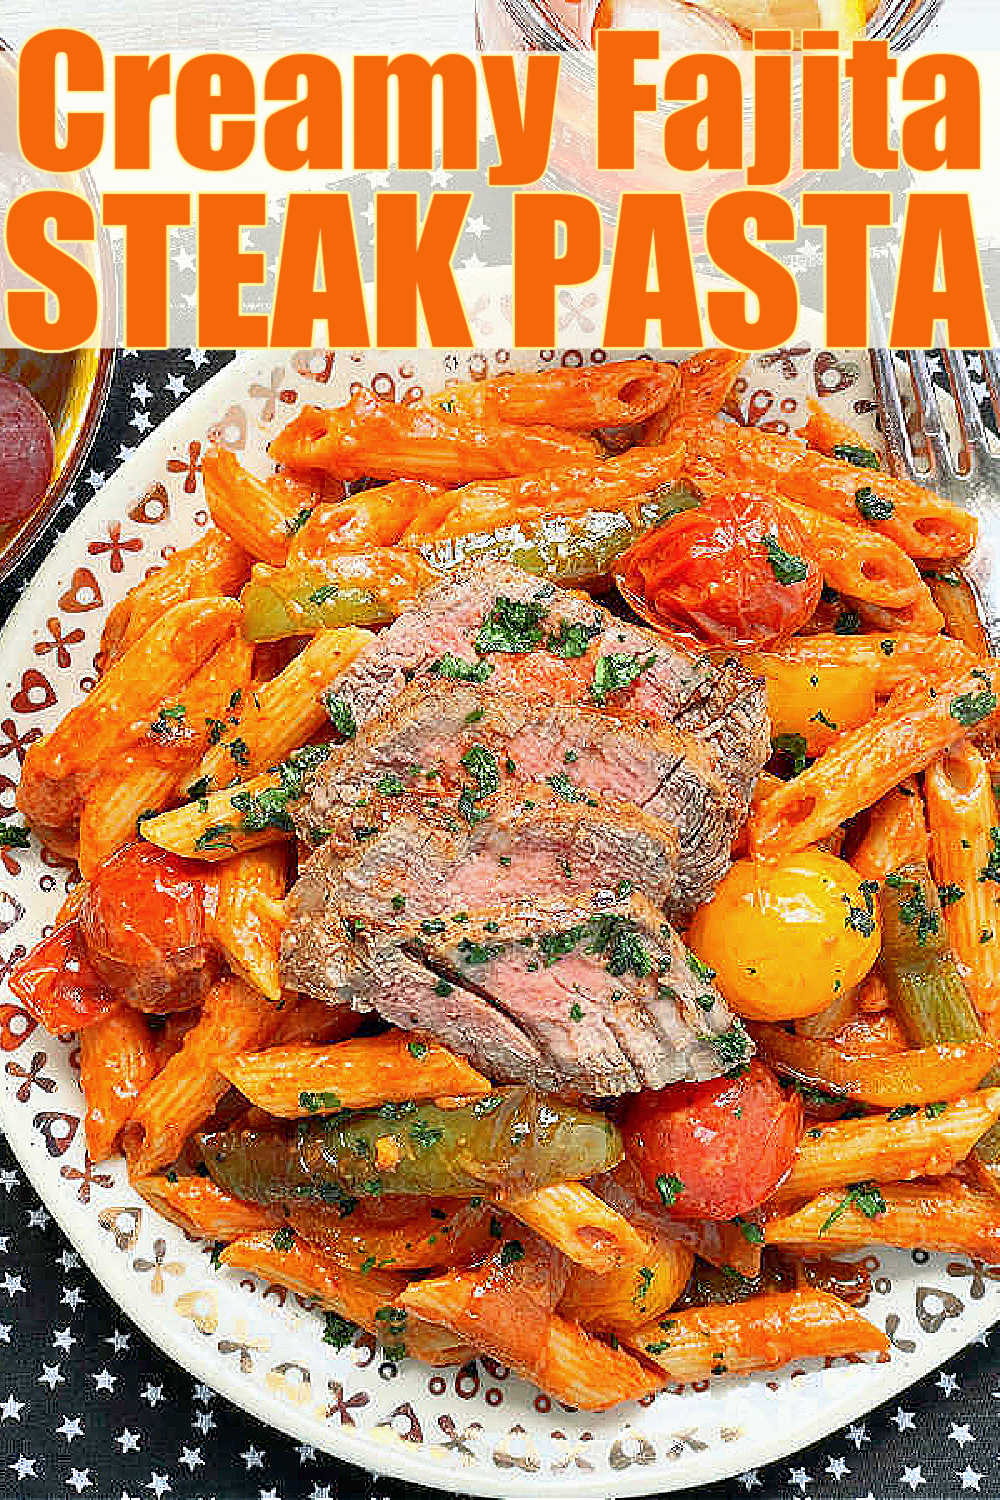 Steak Pasta | Foodtastic Mom #steakrecipes #pastarecipes #steakpasta via @foodtasticmom